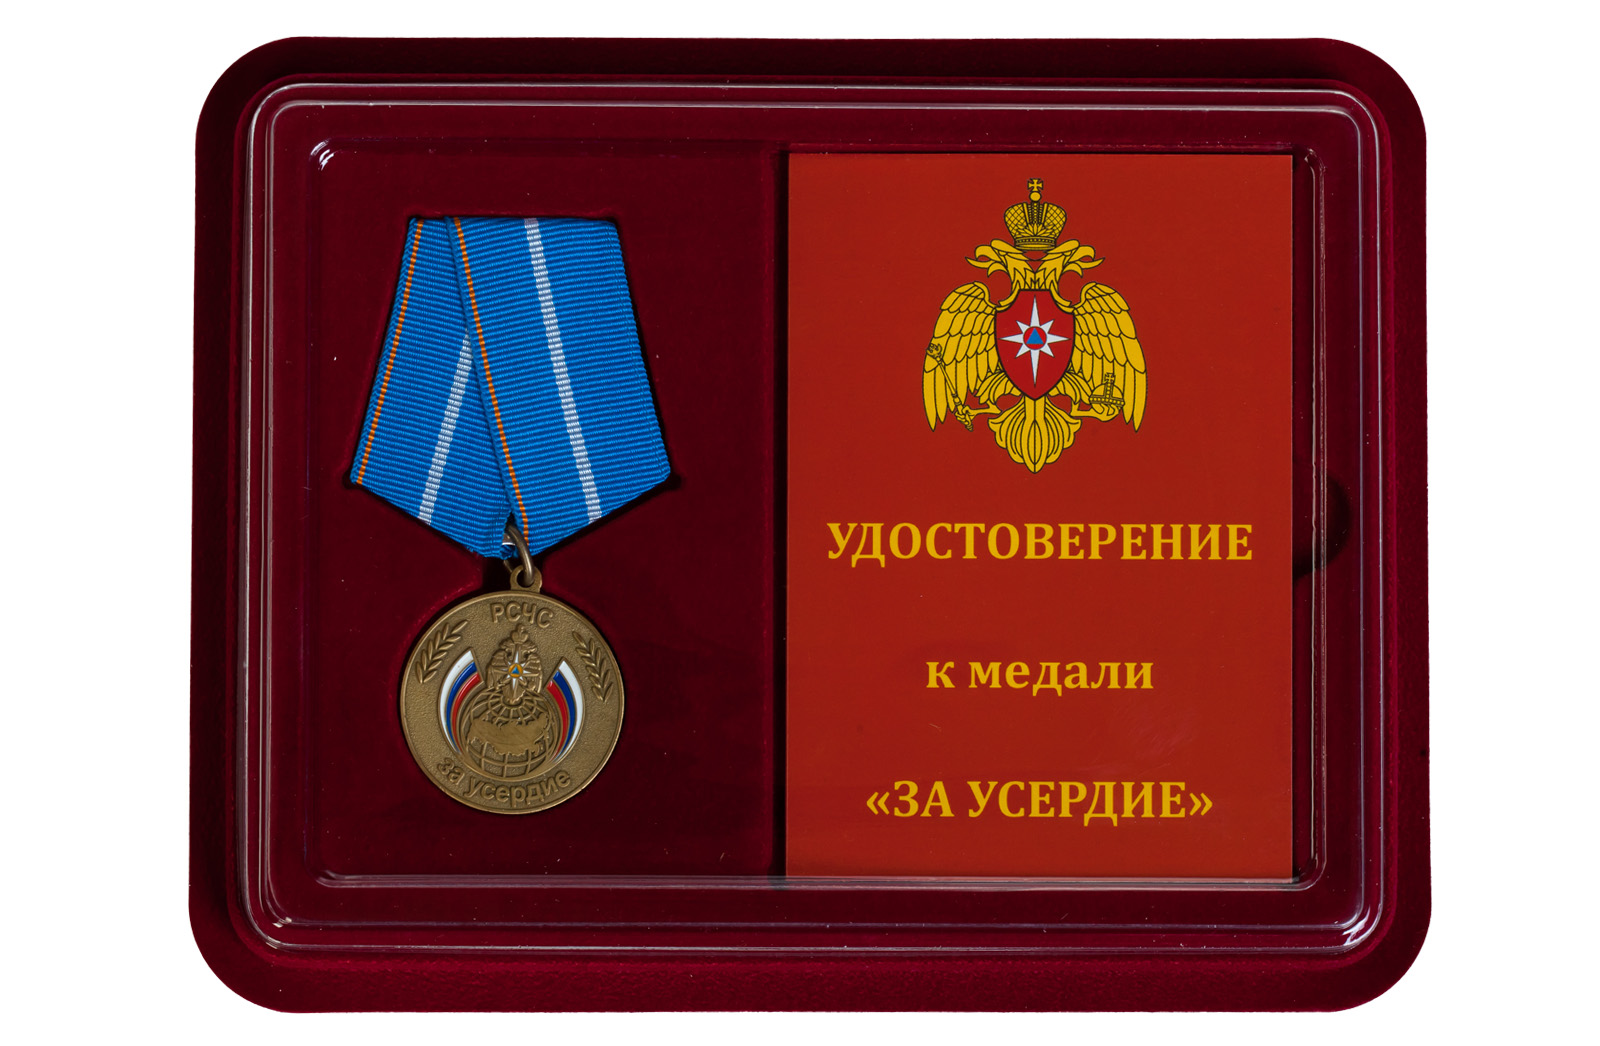 Купить медаль МЧС России За усердие выгодно онлайн